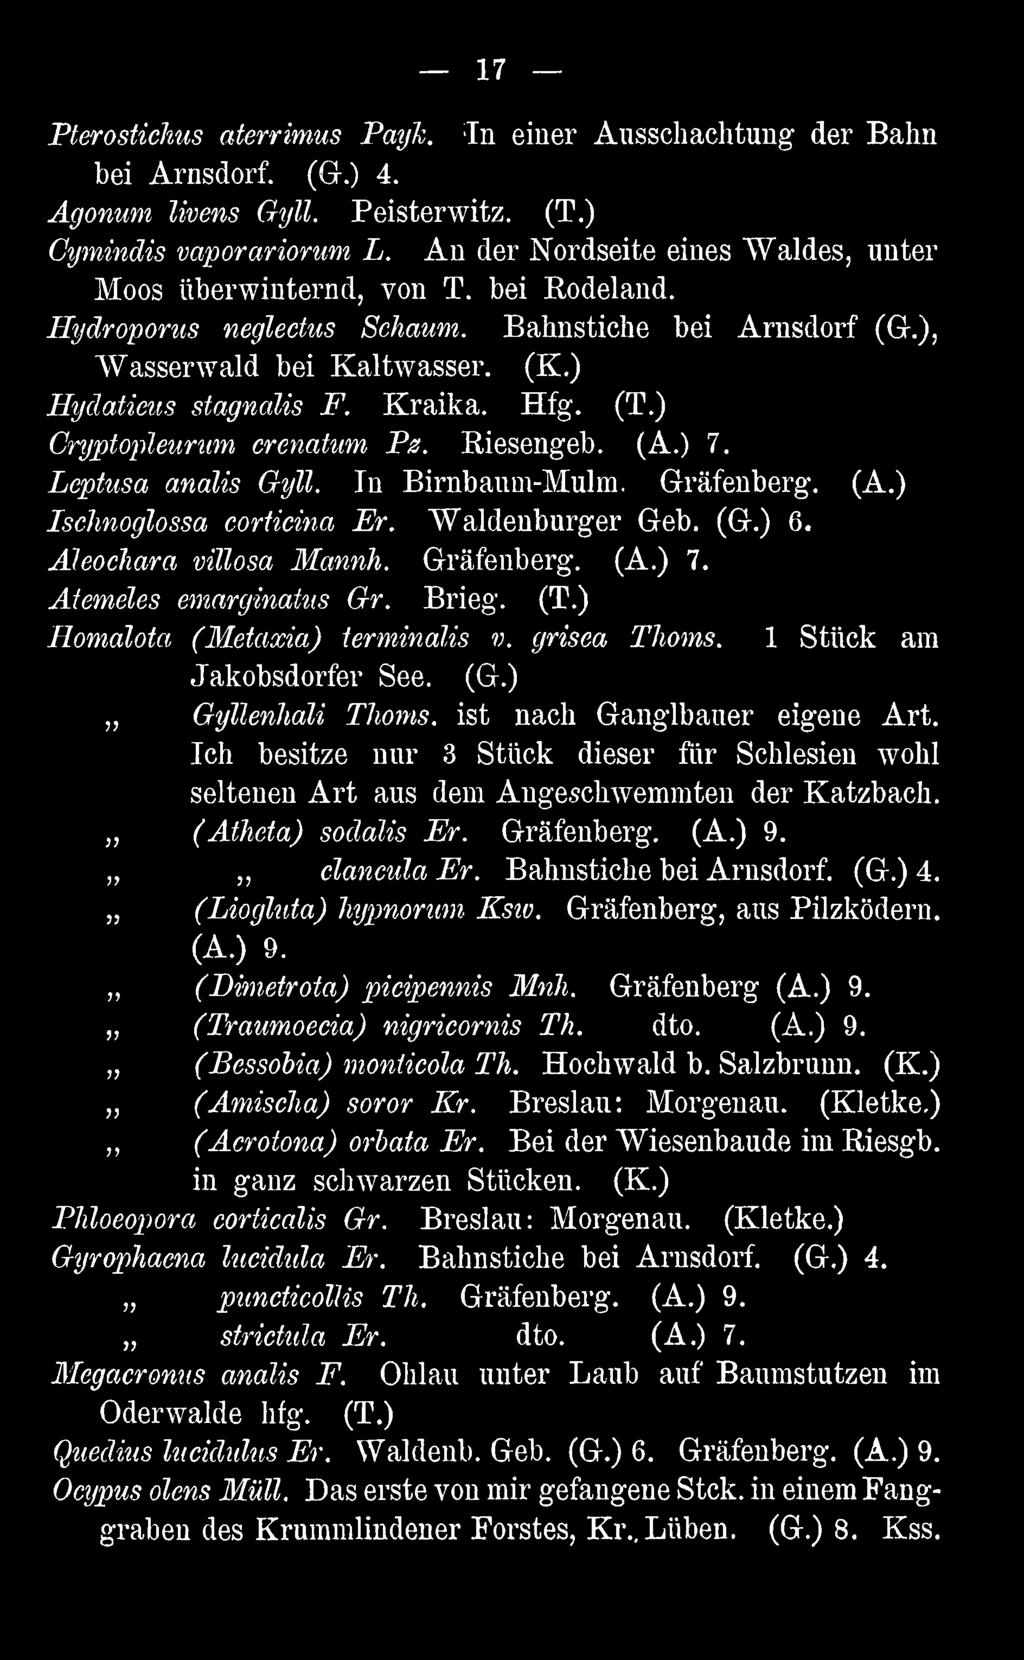 Ich besitze nur 3 Stück dieser für Schlesien wohl seltenen Art aus dem Angeschwemmten der Katzbach. (Atheta) sodalis Er. Gräfenberg. (A.) 9. clancula Er. Bahnstiche bei Arnsdorf. (G.) 4.